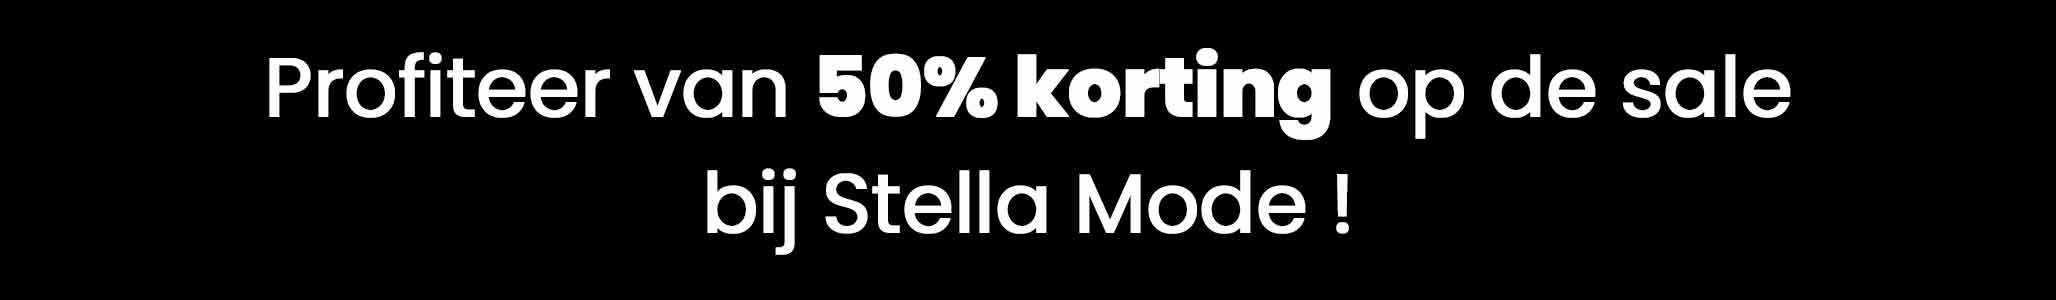 Profiteer van 50% korting op de sale bij Stella Mode !